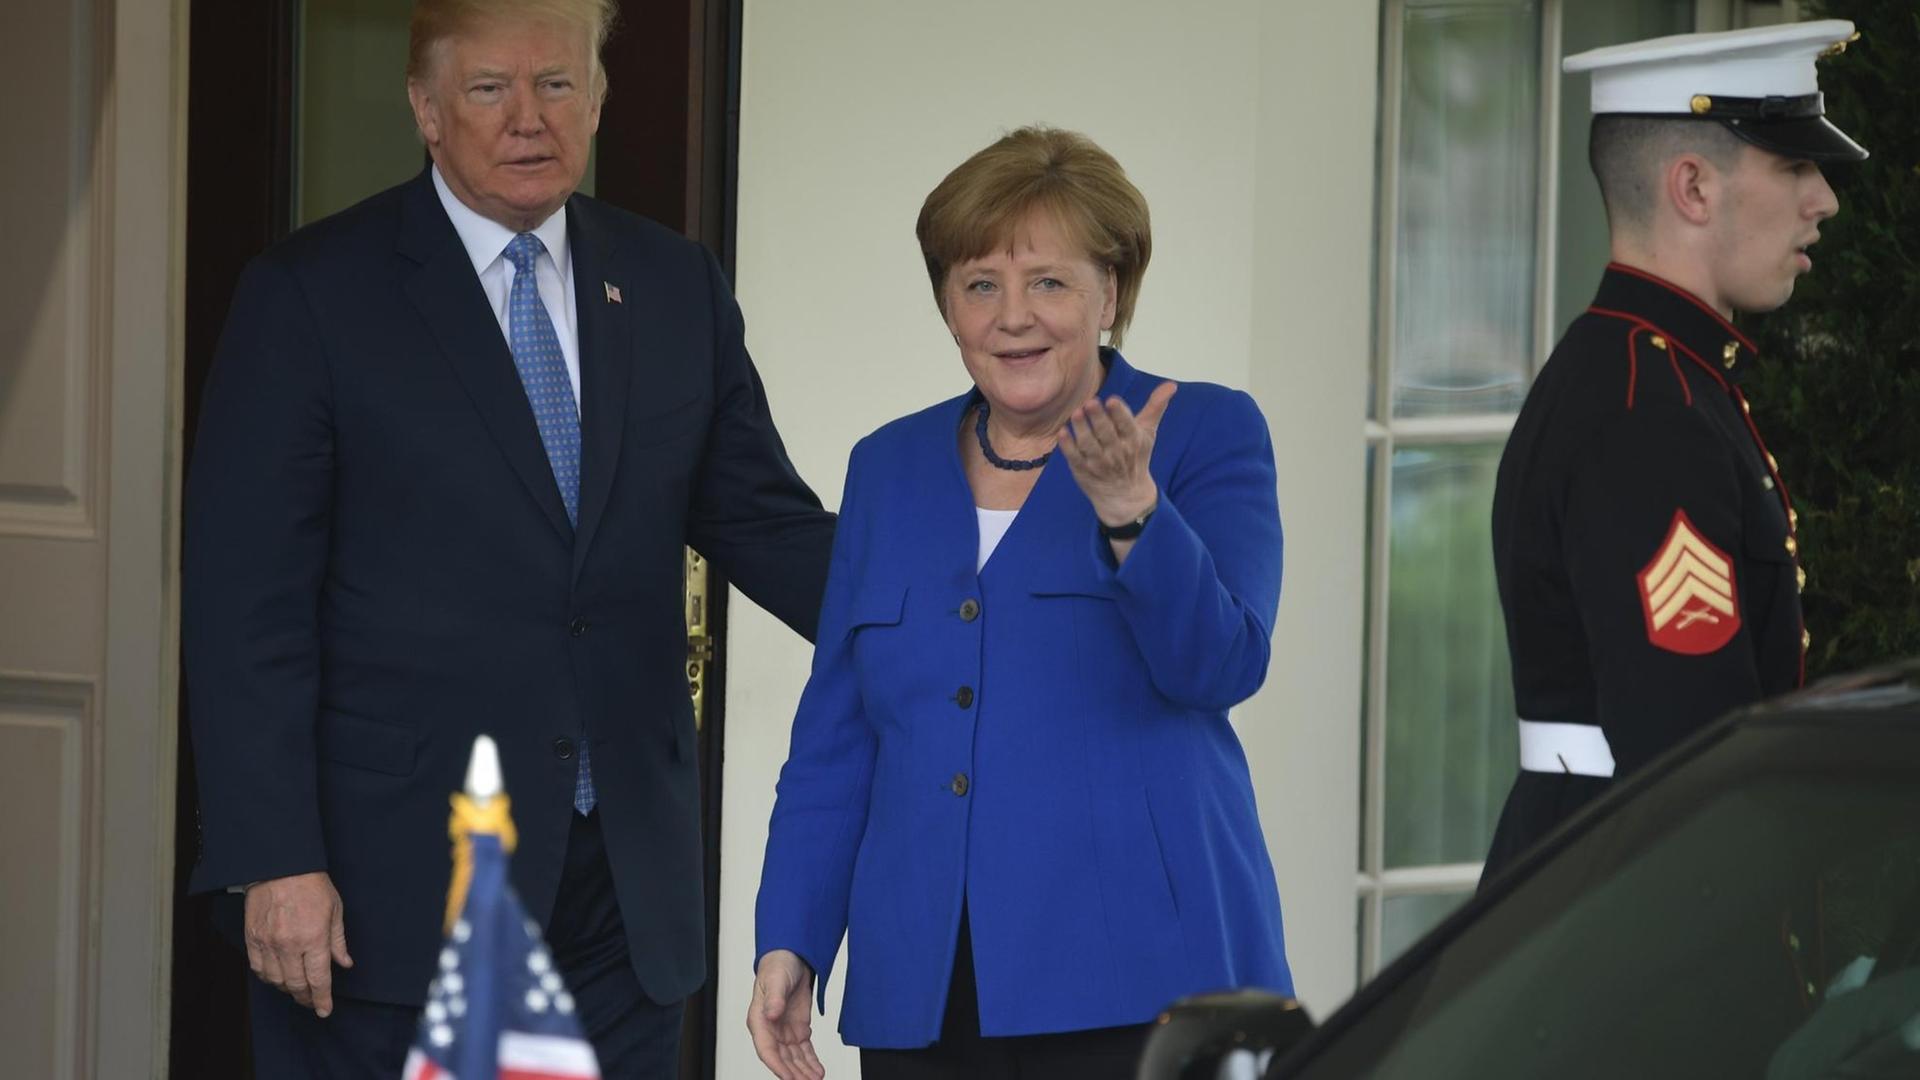 Das Bild zeigt US-Präsident Donald Trump und Bundes-Kanzlerin Angela Merkel bei ihrer Ankunft im Weißen Haus in Washington am 27.4.2018.